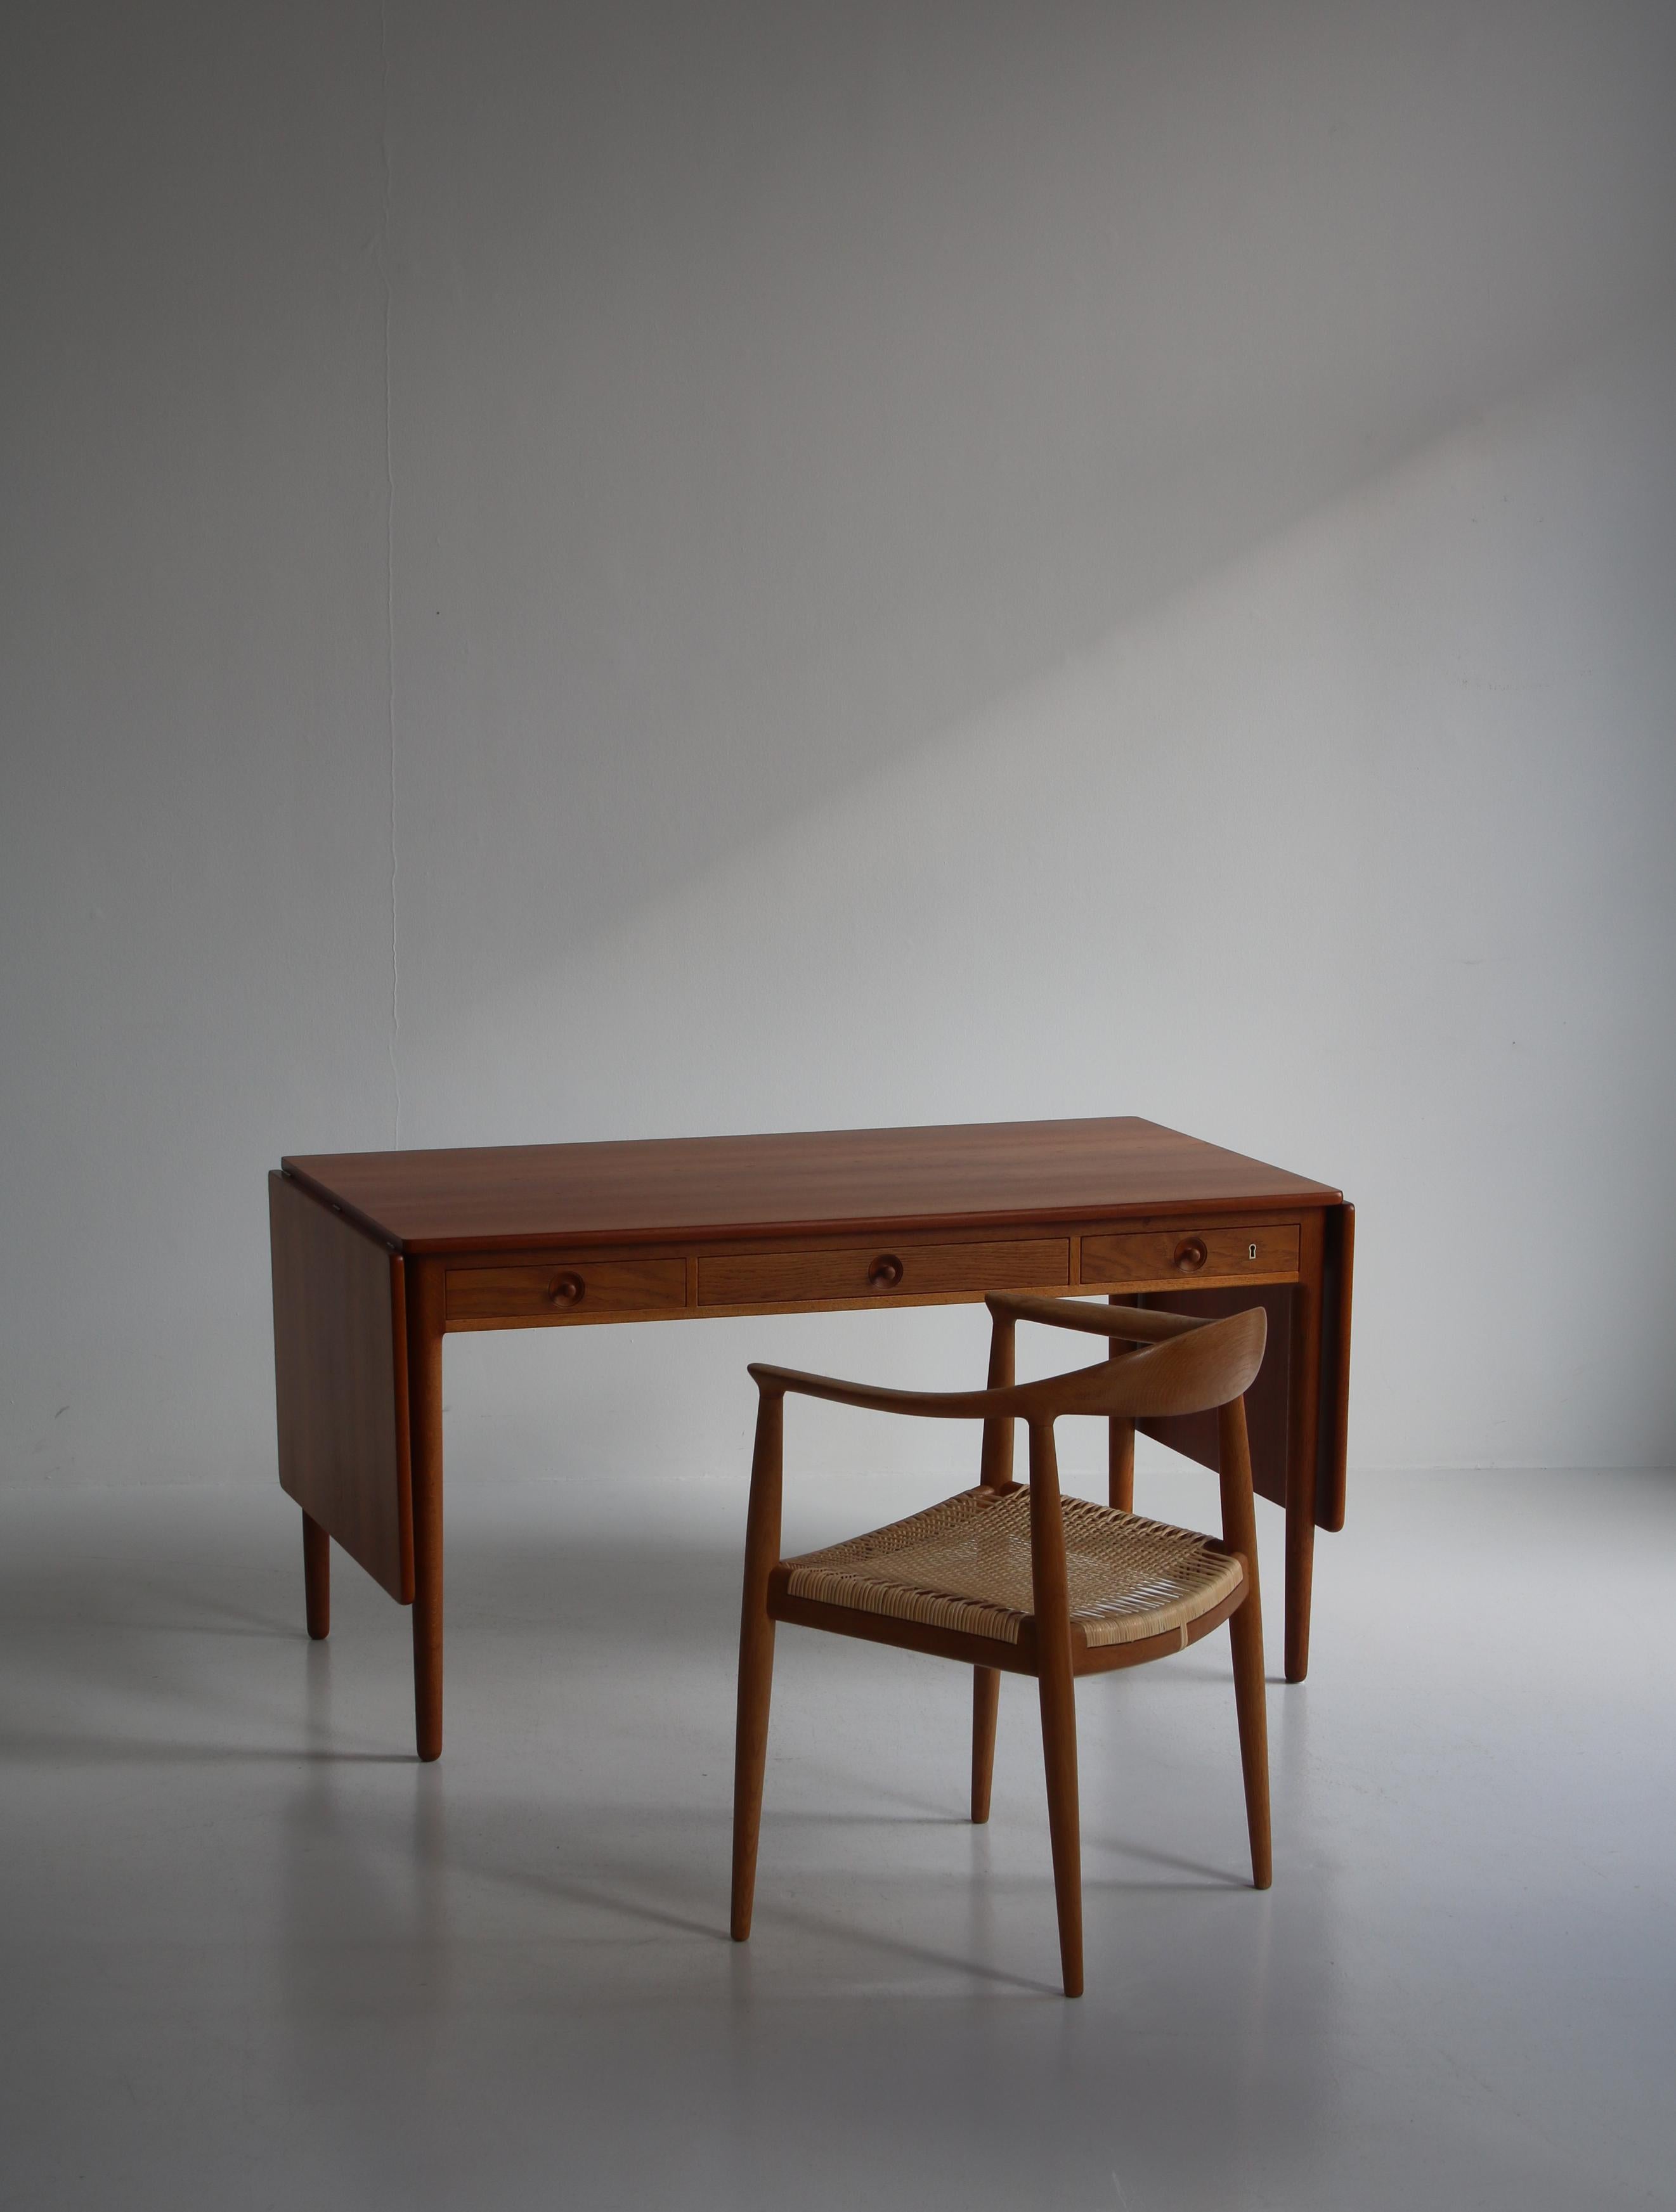 Dieser prächtige Klapptisch des dänischen Designers Hans J. Wegner kann sowohl als Arbeitstisch als auch als Esstisch verwendet werden. Der Entwurf stammt aus dem Jahr 1955 und dieser Tisch aus der frühen und ursprünglichen Produktion des Tischlers